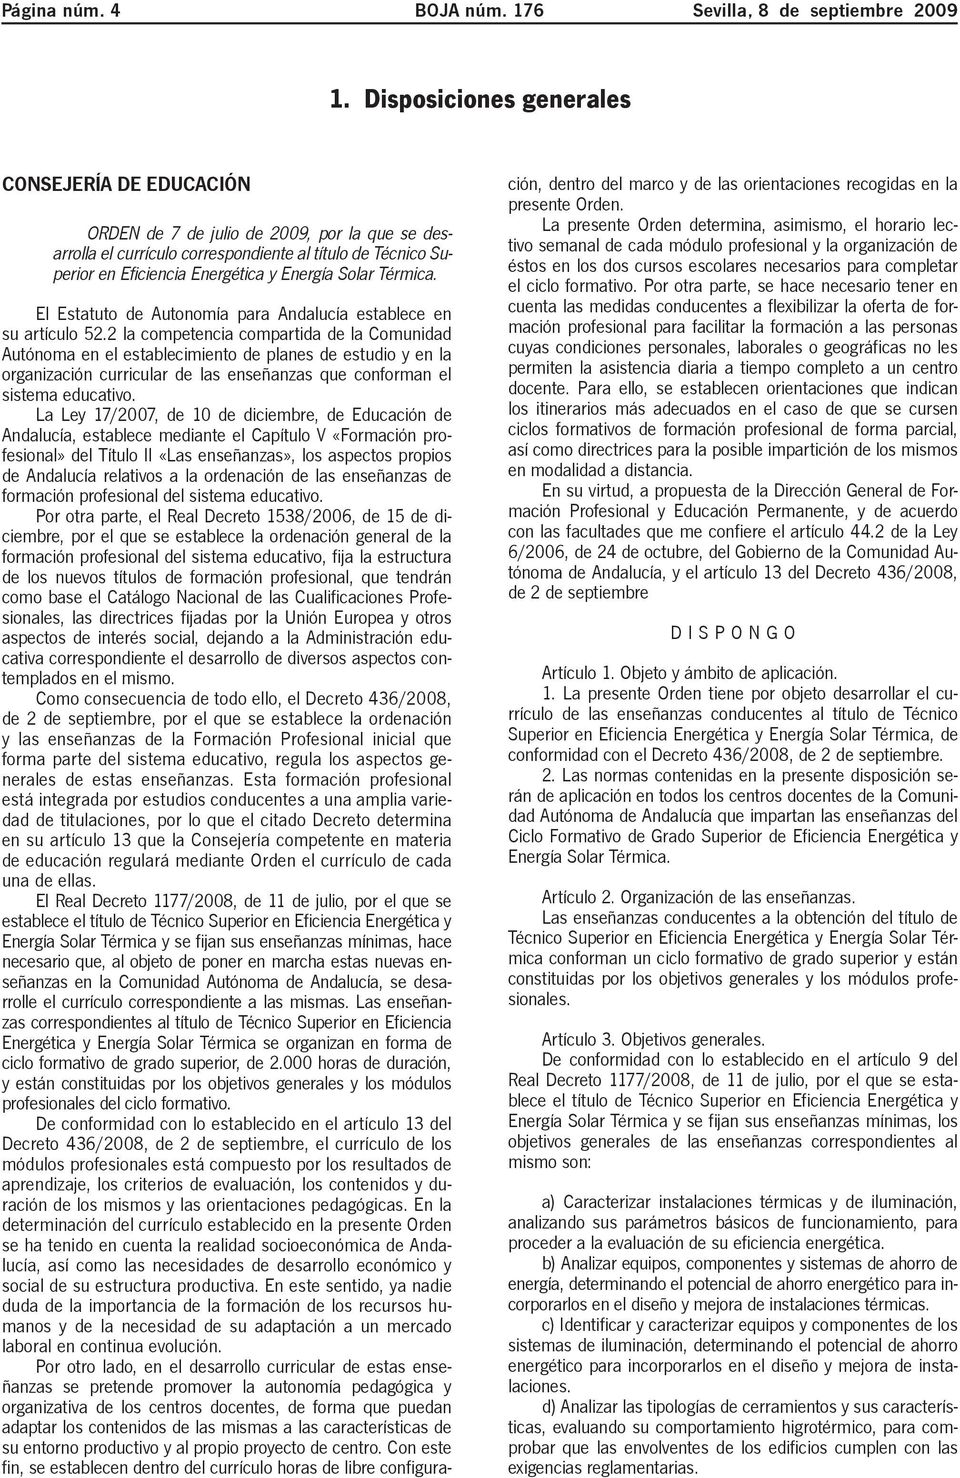 Solar Térmica. El Estatuto de Autonomía para Andalucía establece en su artículo 52.